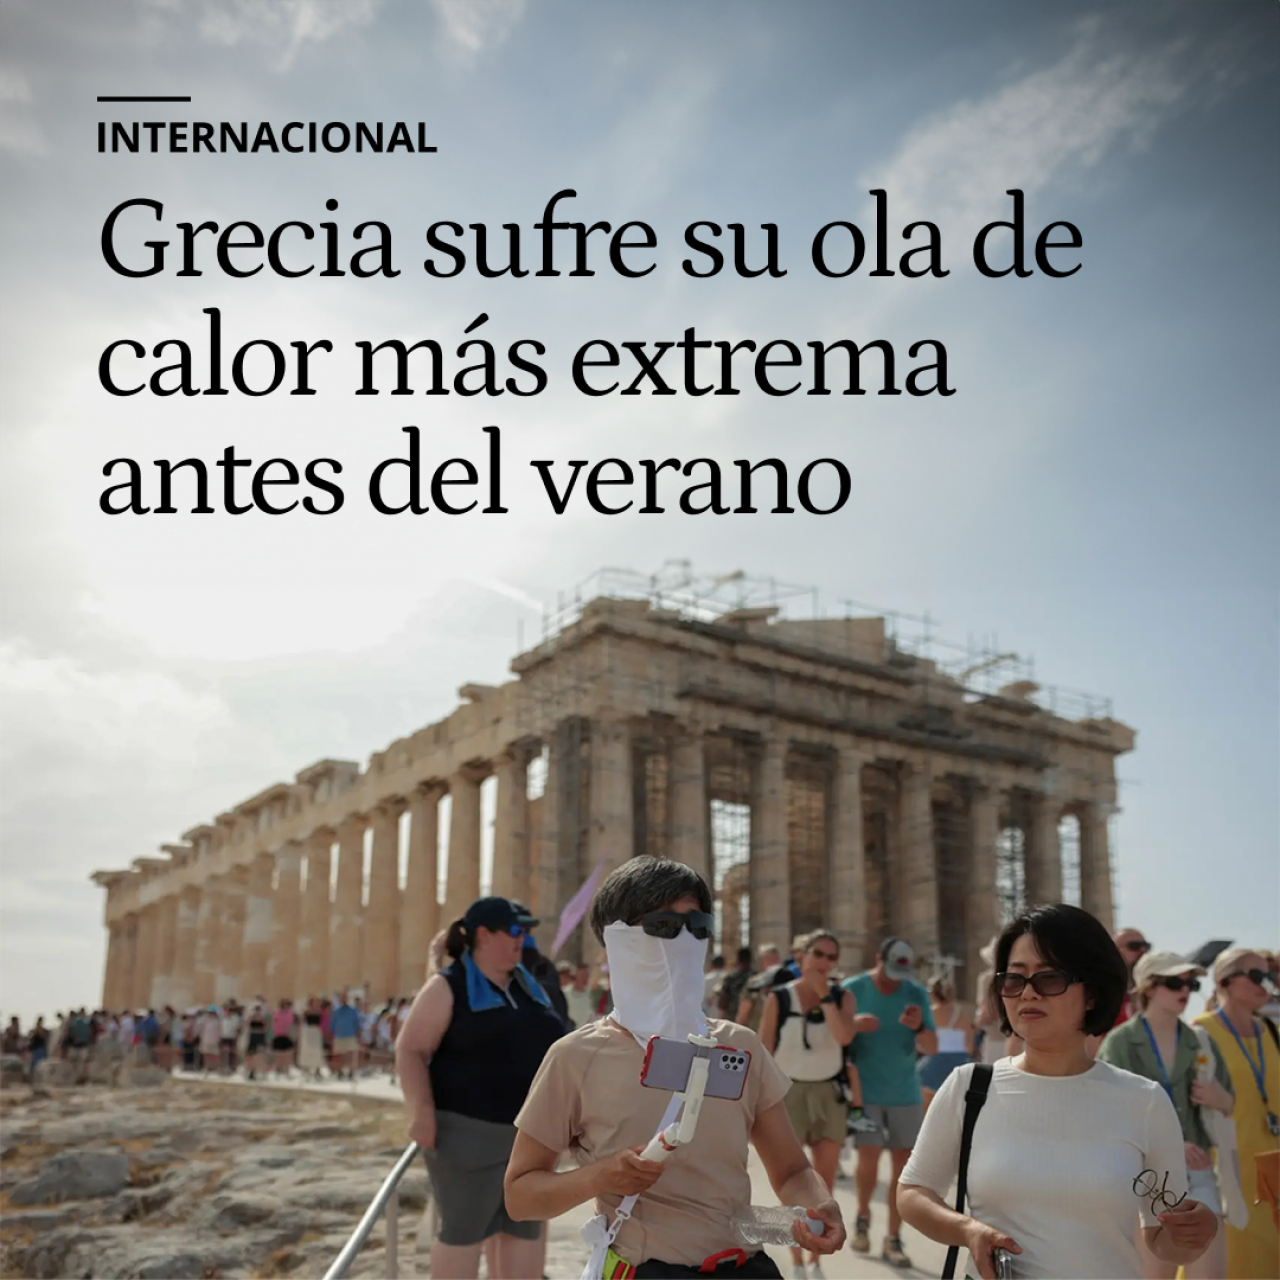 Turistas desaparecidos y la Acrópolis cerrada: Grecia sufre su ola de calor más extrema antes del verano